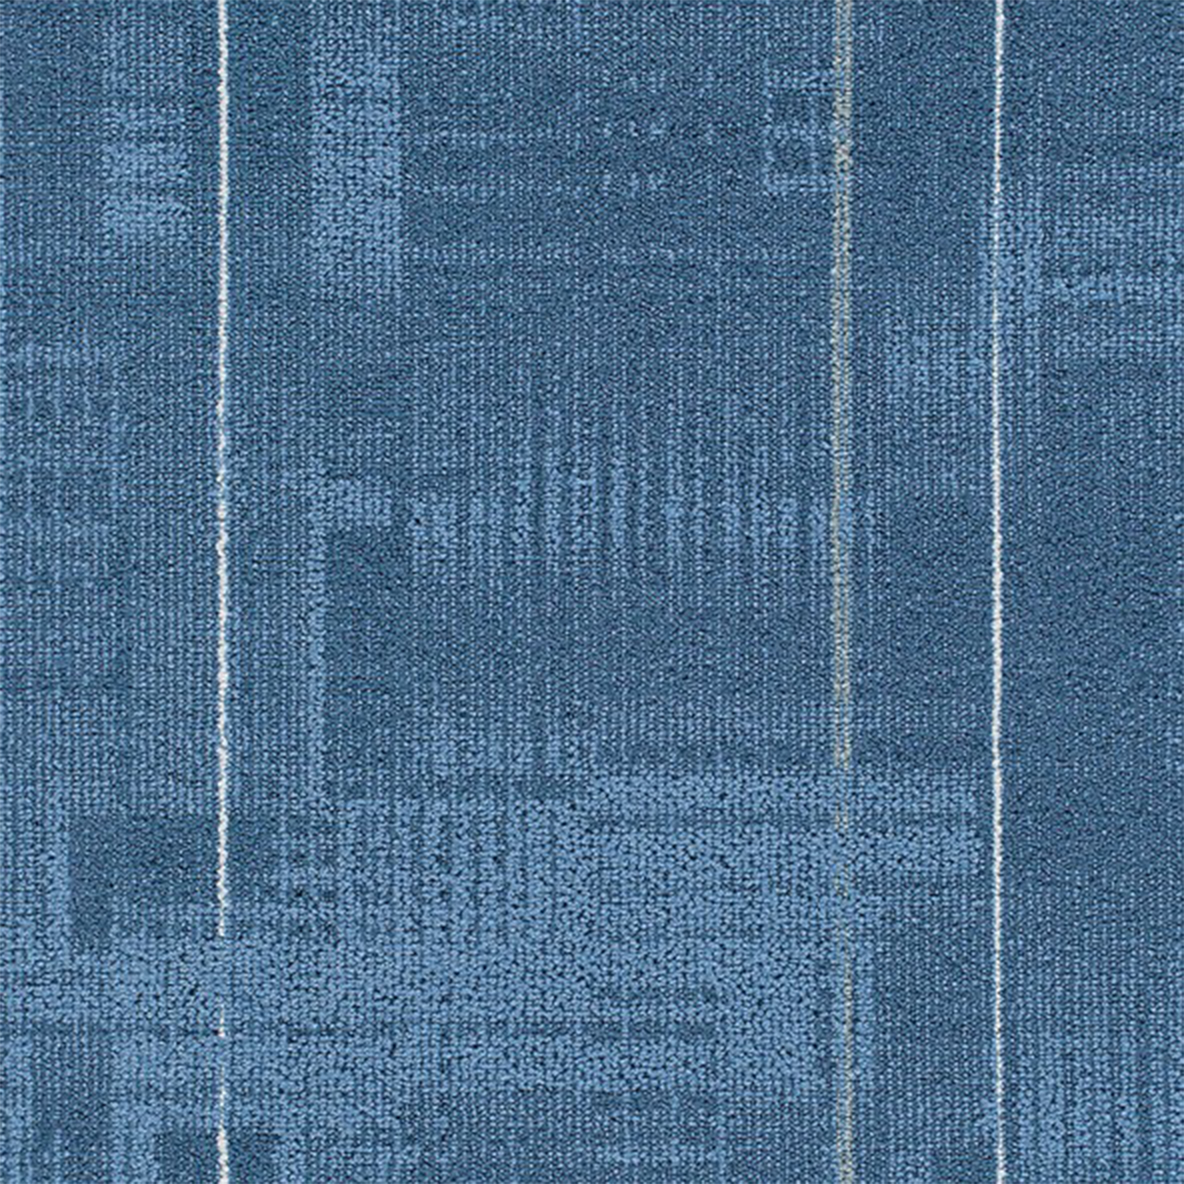 Make Sense Commercial Carpet Tiles .31 Inch x 50x50 cm per Tile Ultramarine color close up